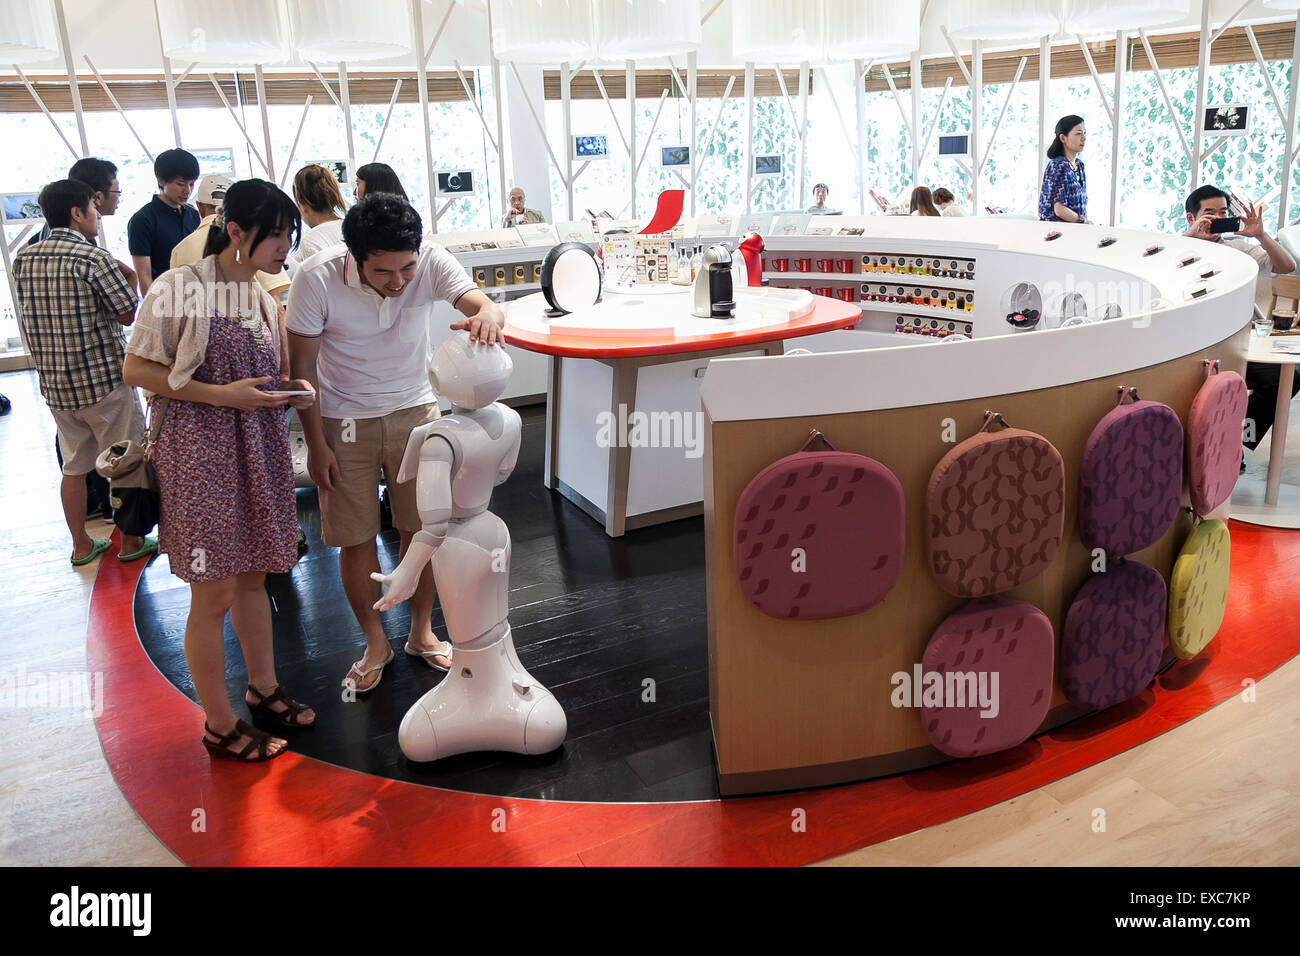 Tokyo, Giappone. 11 Luglio, 2015. I clienti a salutare il robot umanoide Pepe sul suo primo giorno come un nuovo membro del personale del Nescafe coffee-shop in Harajuku sulla luglio 11, 2015, Tokyo, Giappone. Sei i robot sono programmati per interagire con le persone mentre introducendo il Nescafe prodotti durante un evento speciale ''Il mondo? Futuro cafe da NESCAFE con pepe'" sabato 11 luglio. Il negozio continuerà a impiegare due robot come regular staff per introdurre il negozio di prodotti e servizi. Credito: Rodrigo Reyes Marin/AFLO/Alamy Live News Foto Stock